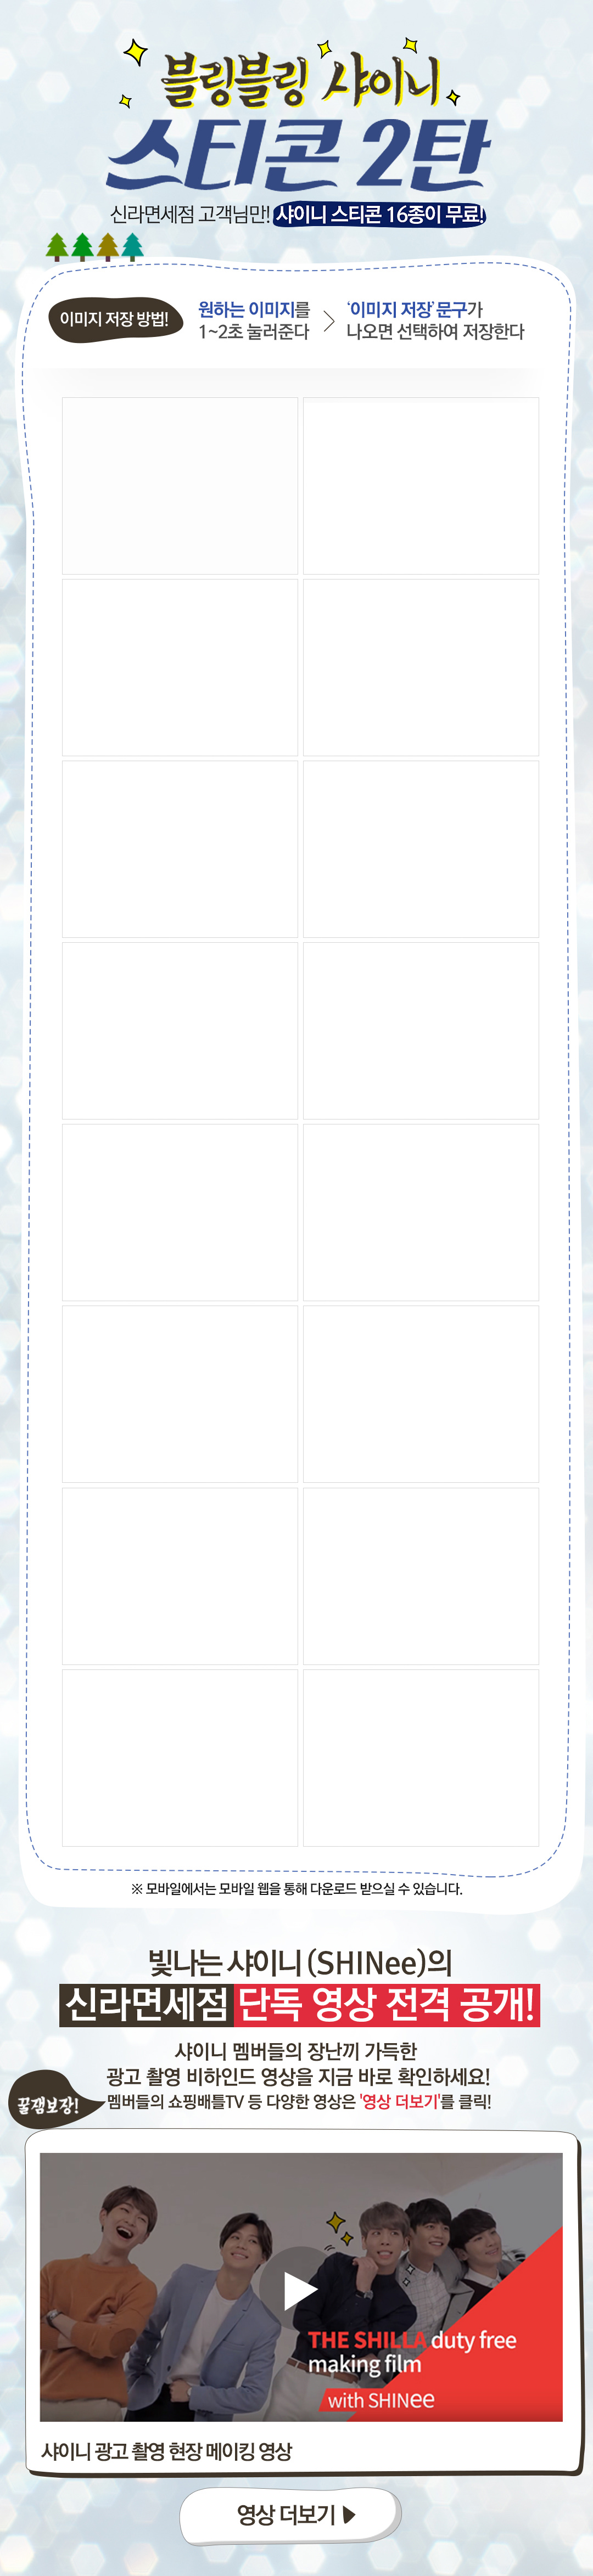 블링블링 샤이니 스티콘 2탄 신라면세점 고객님만! 샤이니 스티콘 16종이 무료!